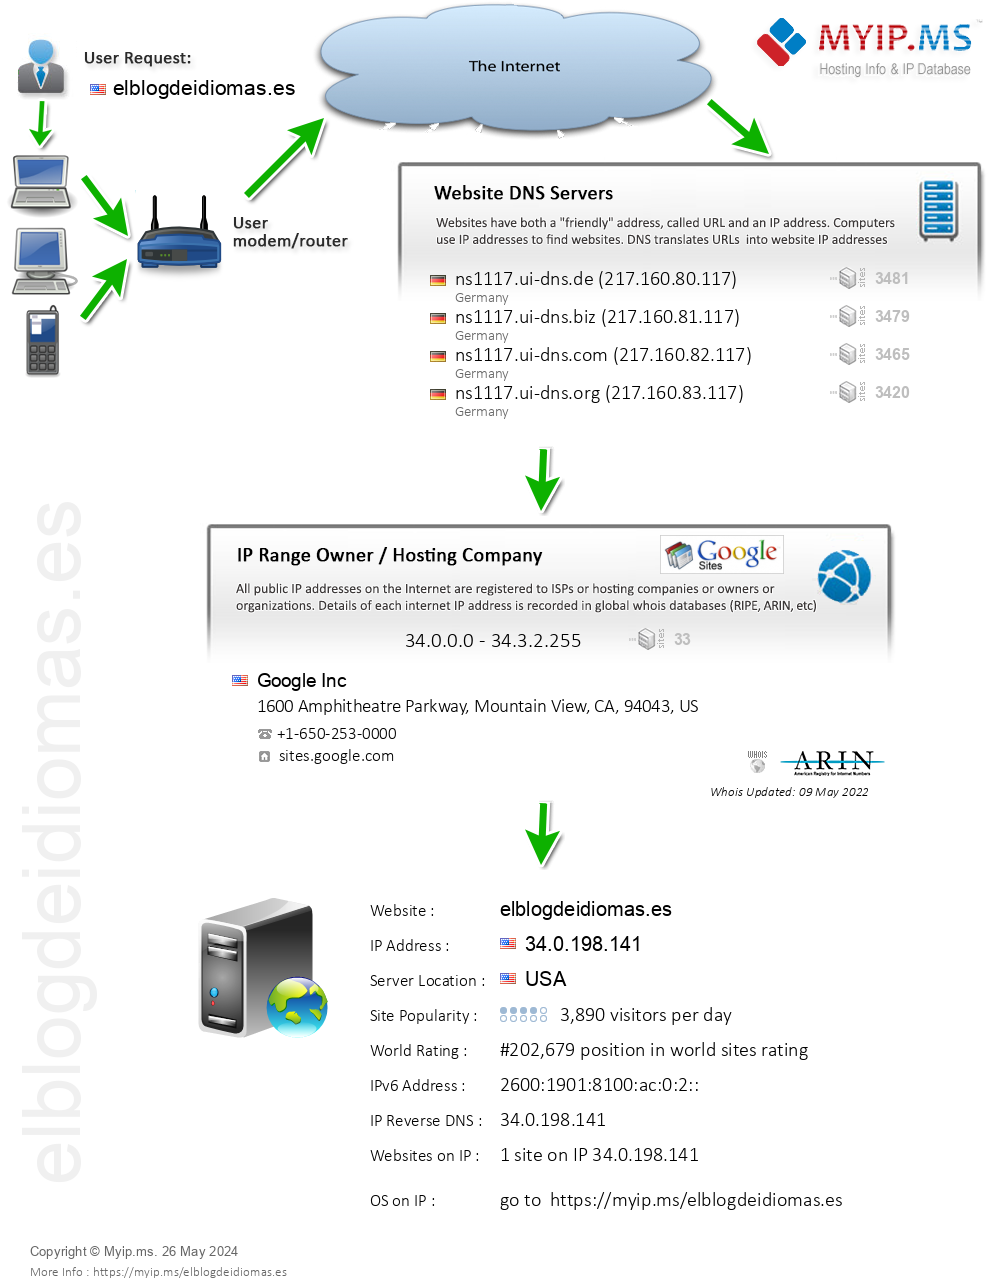 Elblogdeidiomas.es - Website Hosting Visual IP Diagram